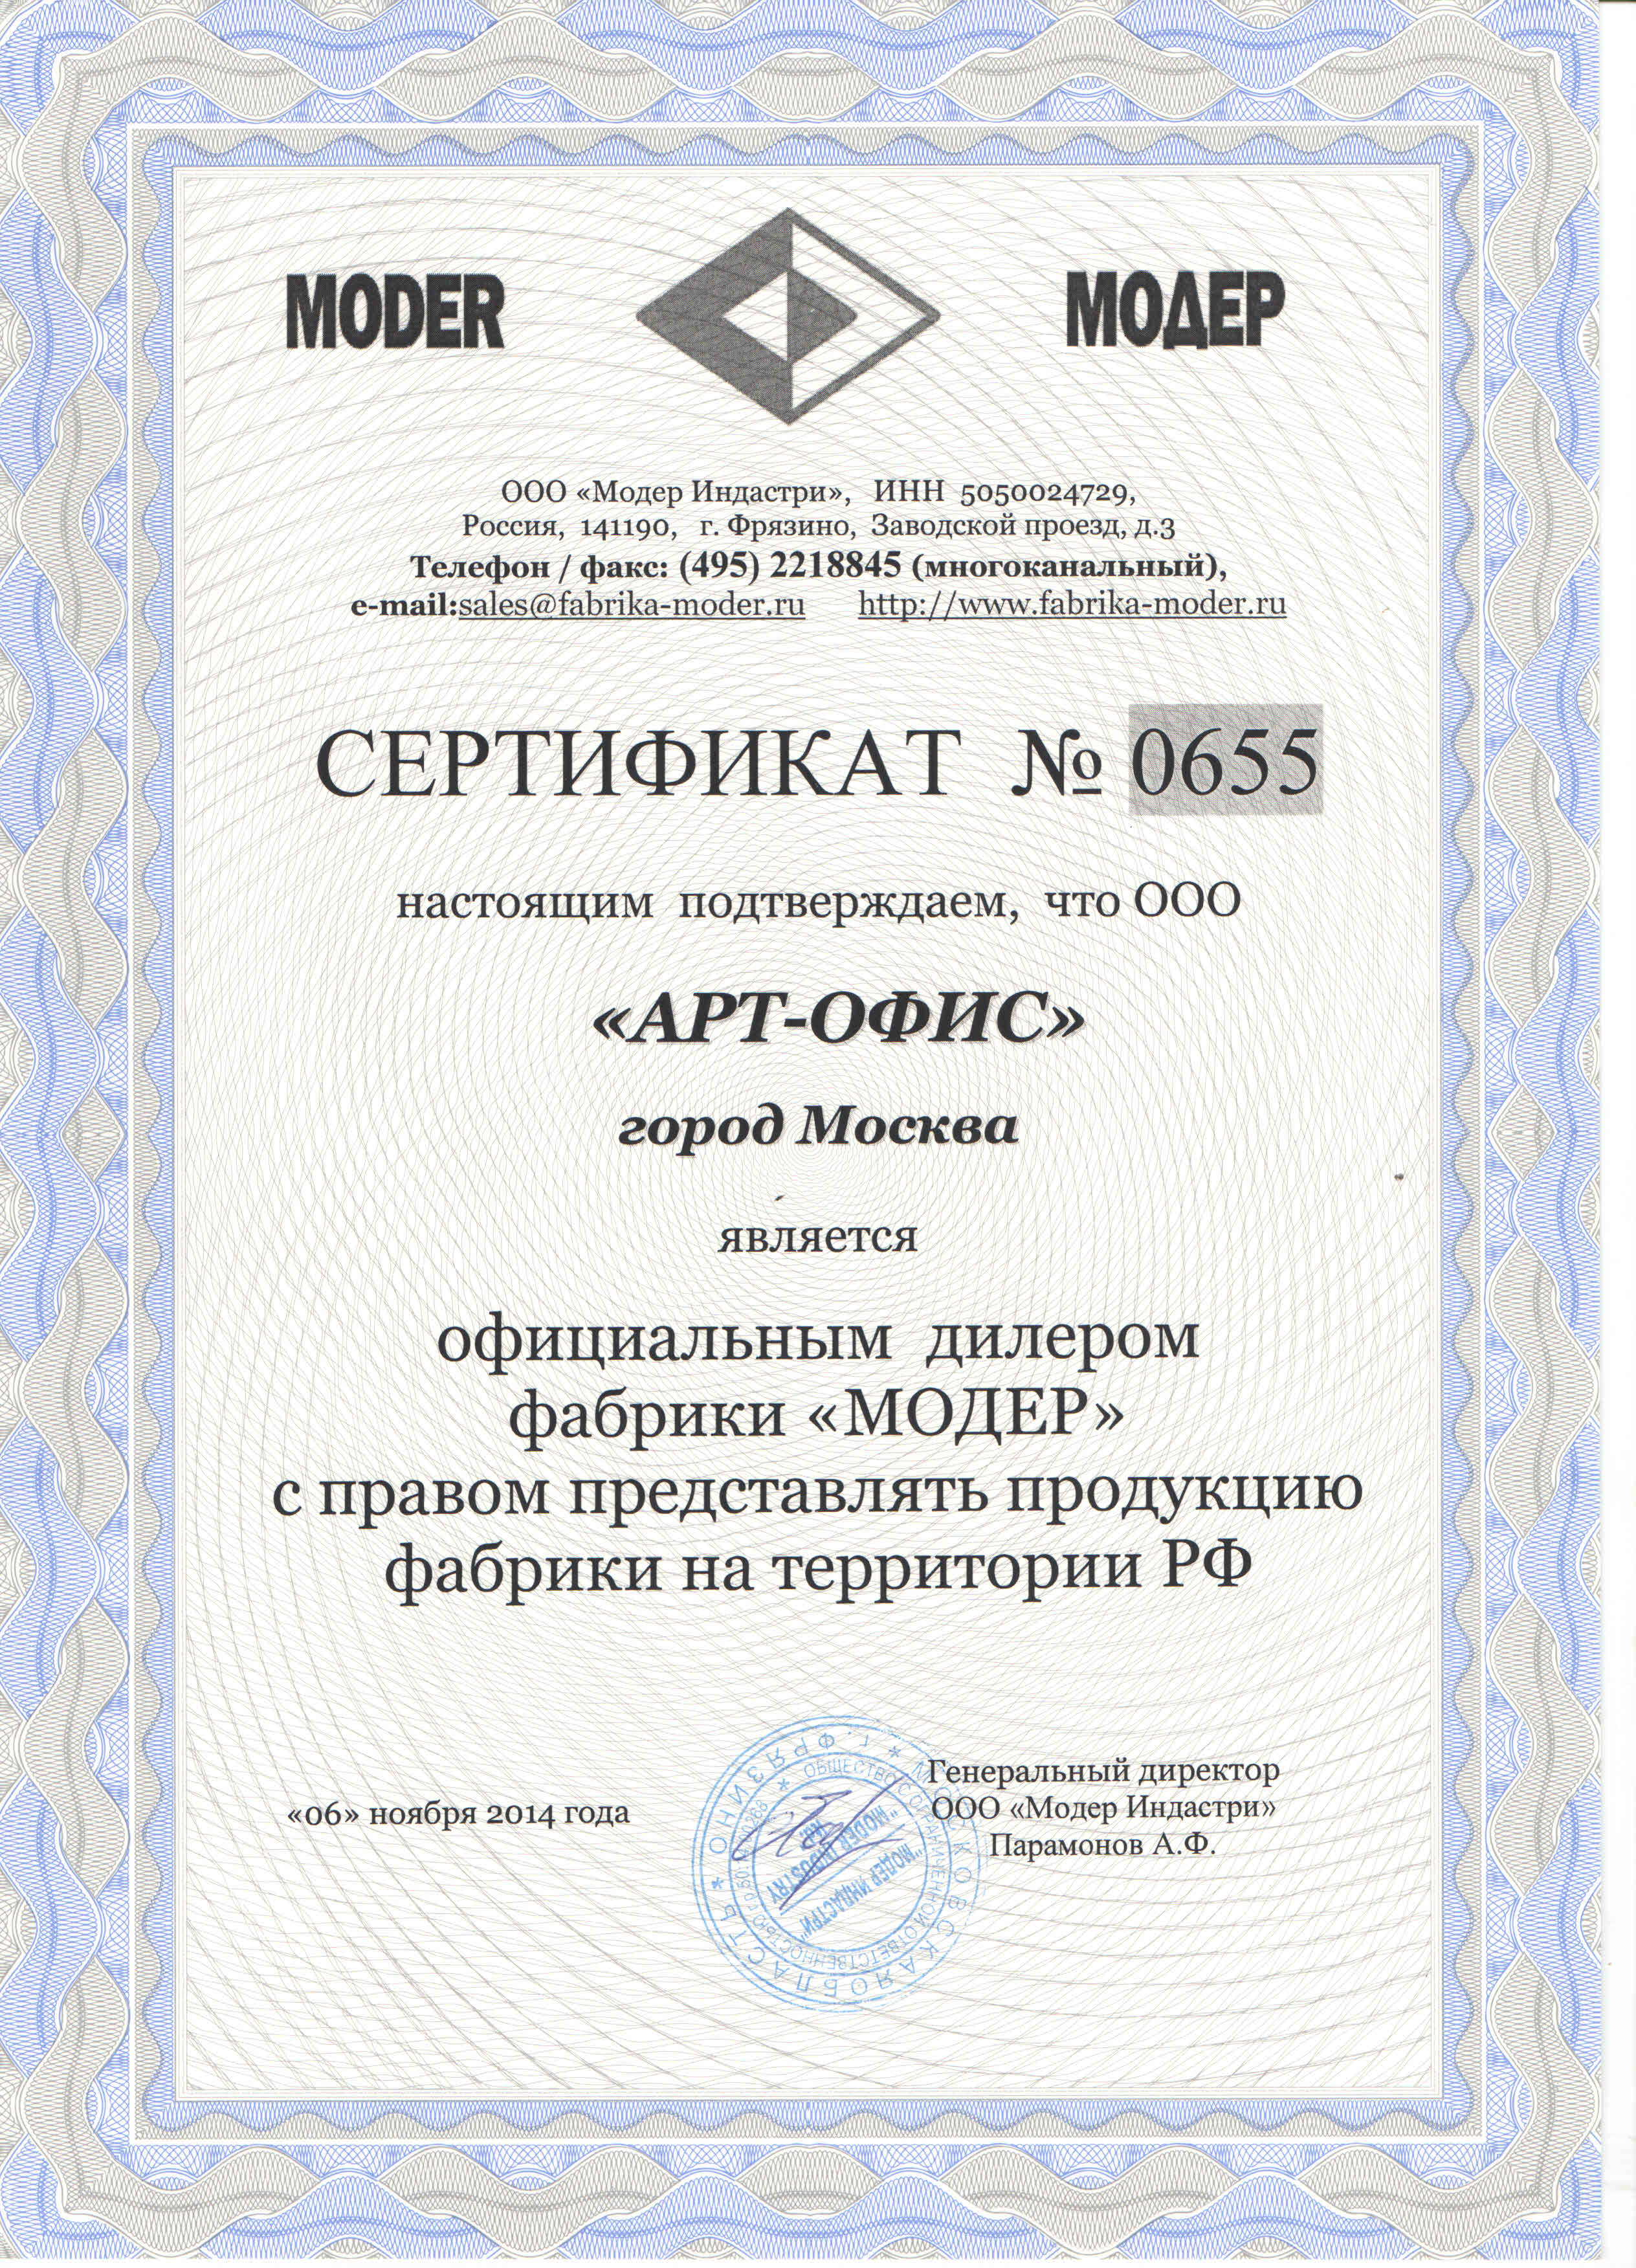 Сертификат от ФАБРИКИ «Модер»